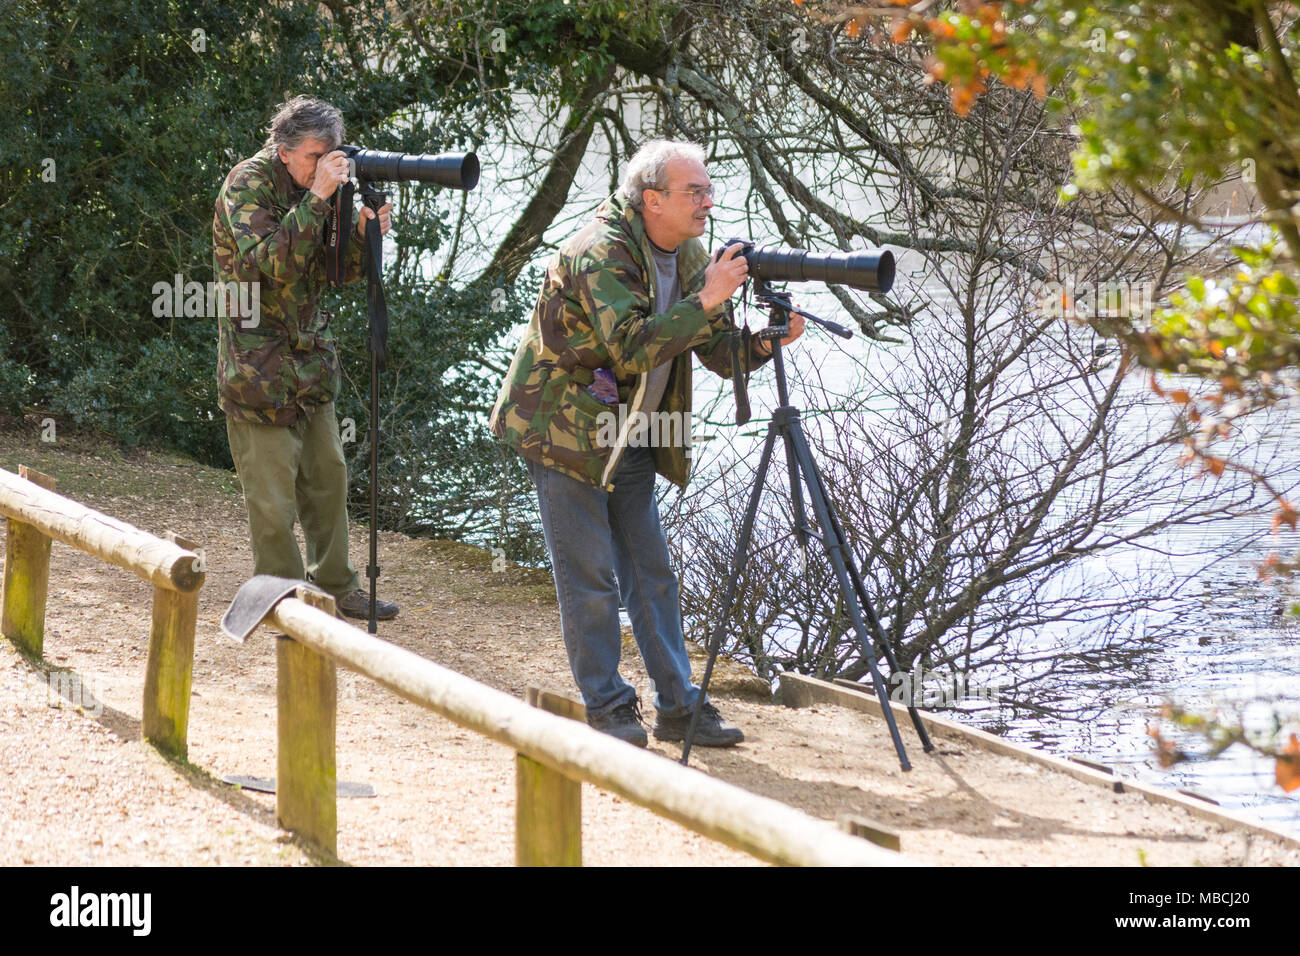 Vogelbeobachter mit Kameras und Objektive Stative warten geduldig Vogel Fotos neben Eyeworth Teich, Fritham, New Forest, Hampshire nehmen Stockfoto